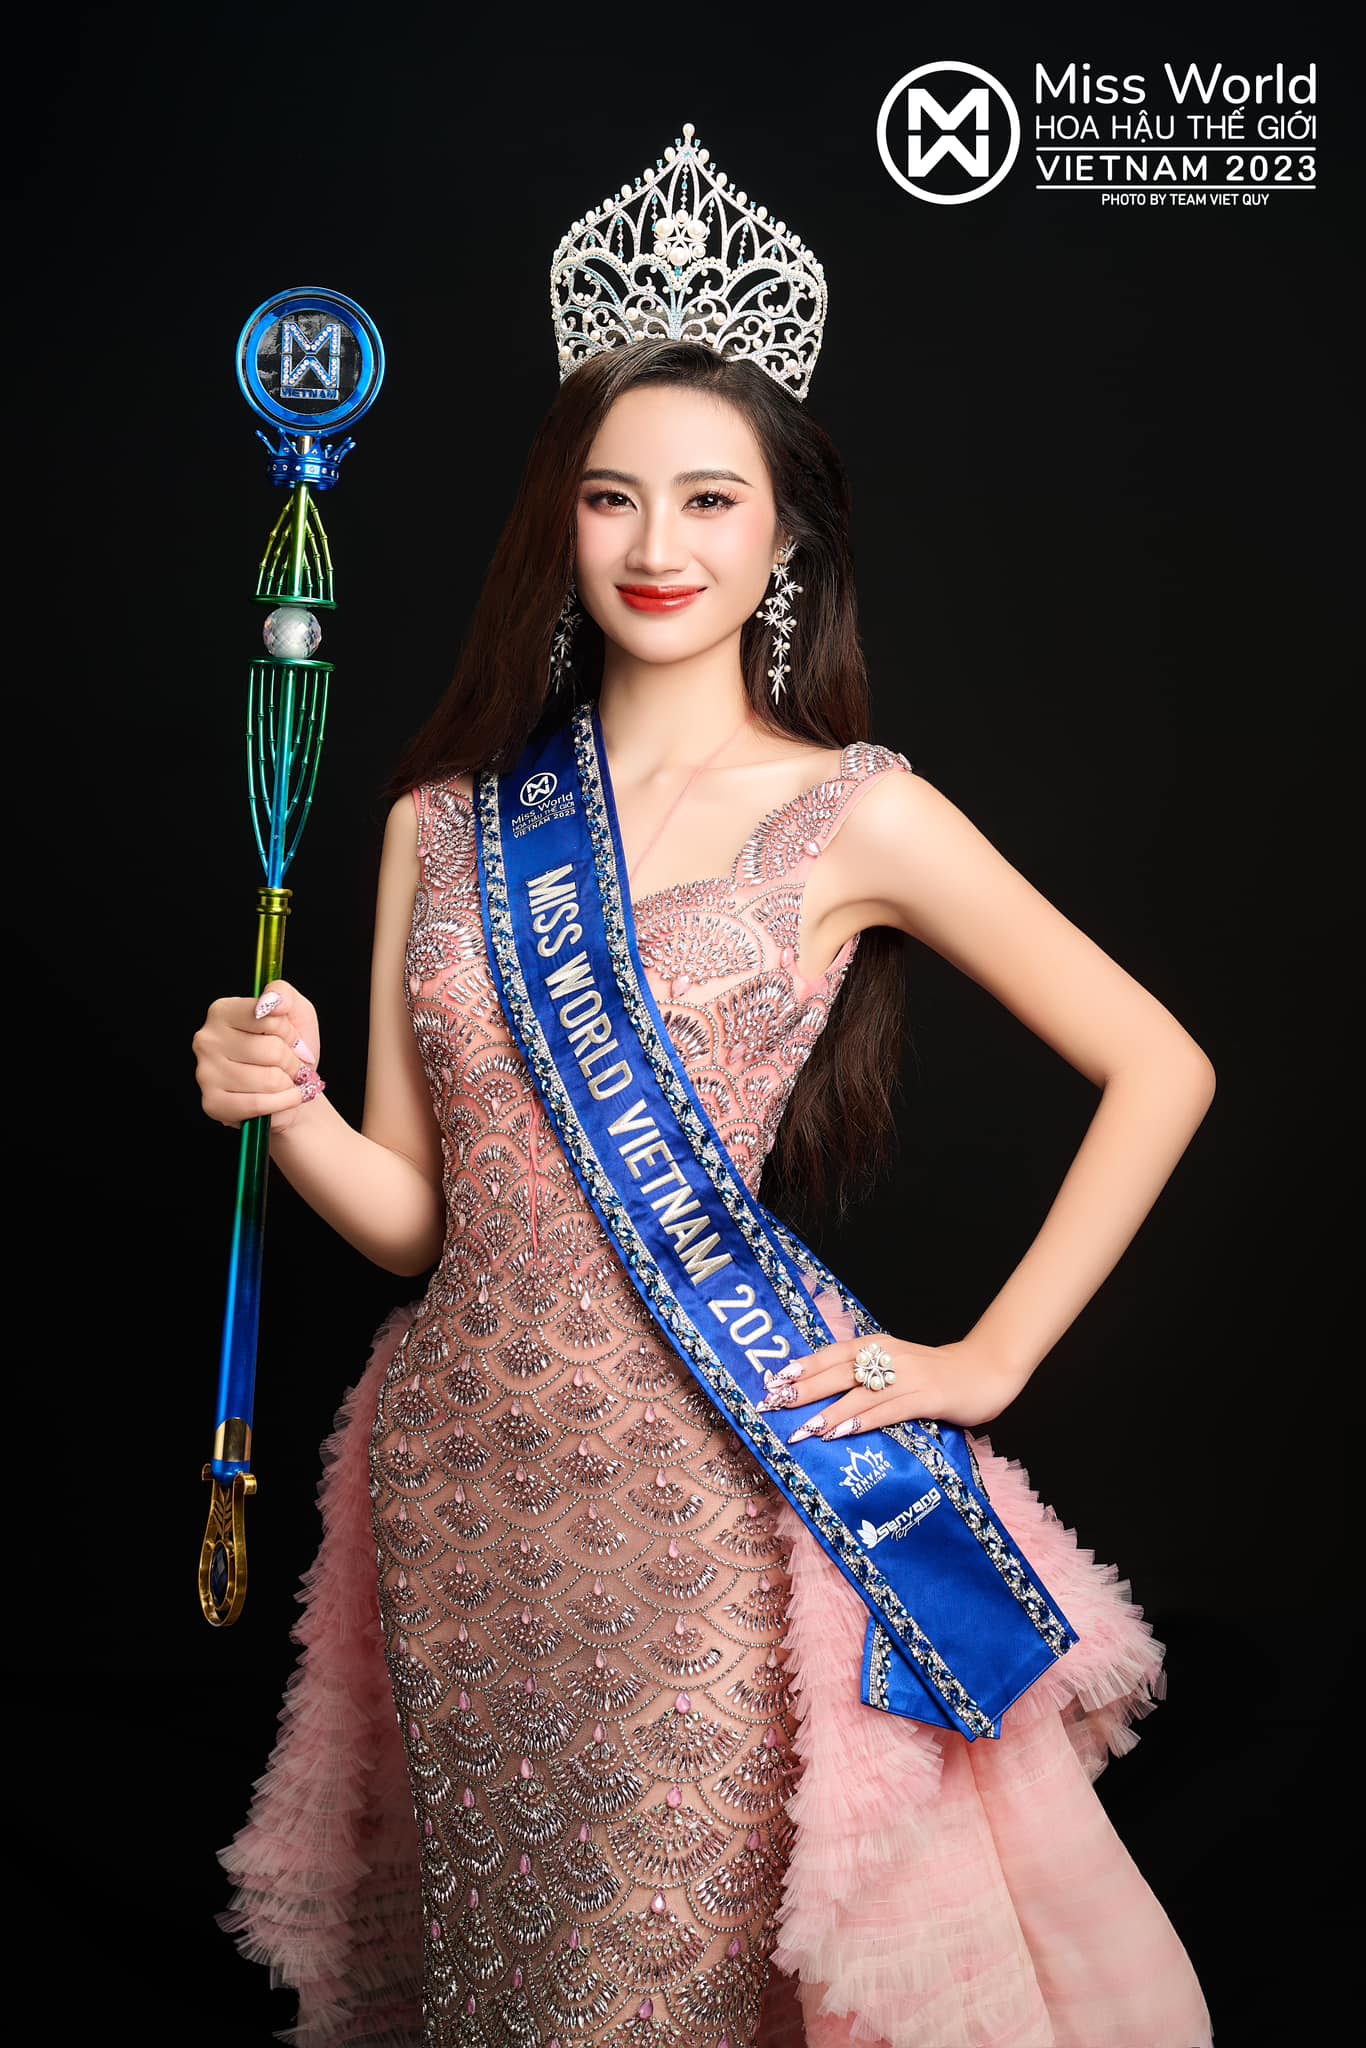 'Cha đẻ' của cuộc thi Hoa hậu Việt Nam: 'Tước vương miện thì hơi nặng nề với Ý Nhi' - ảnh 3